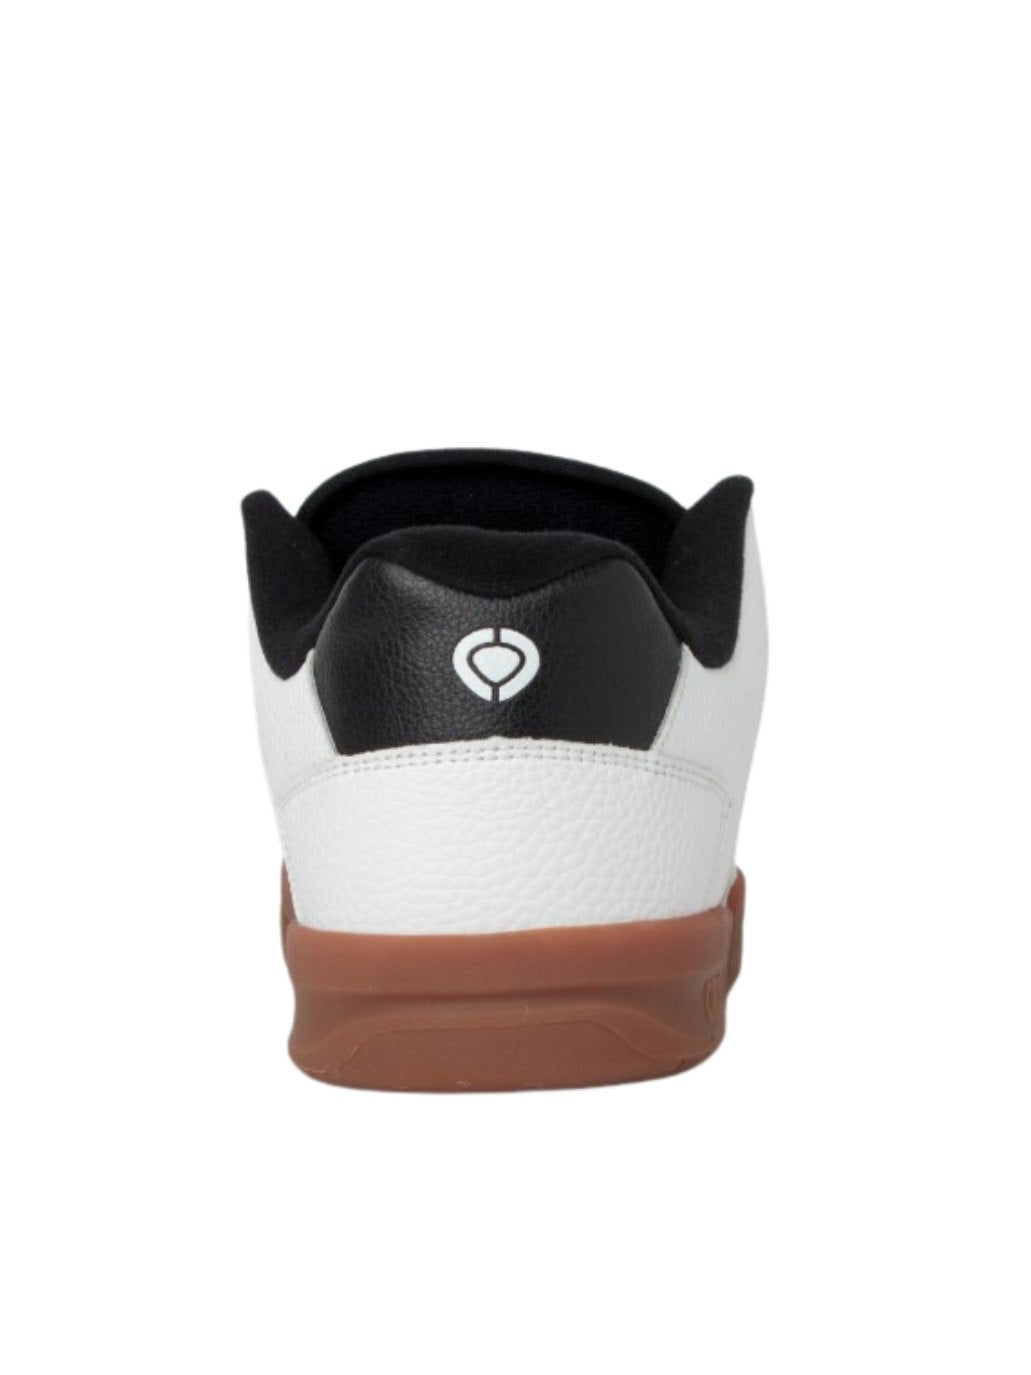 Circa 805 Skateschuhe in Weiß/Gummi | Meistverkaufte Produkte | Neue Produkte | Neueste Produkte | Sammlung_Zalando | Schuhwerk | Turnschuhe | surfdevils.com